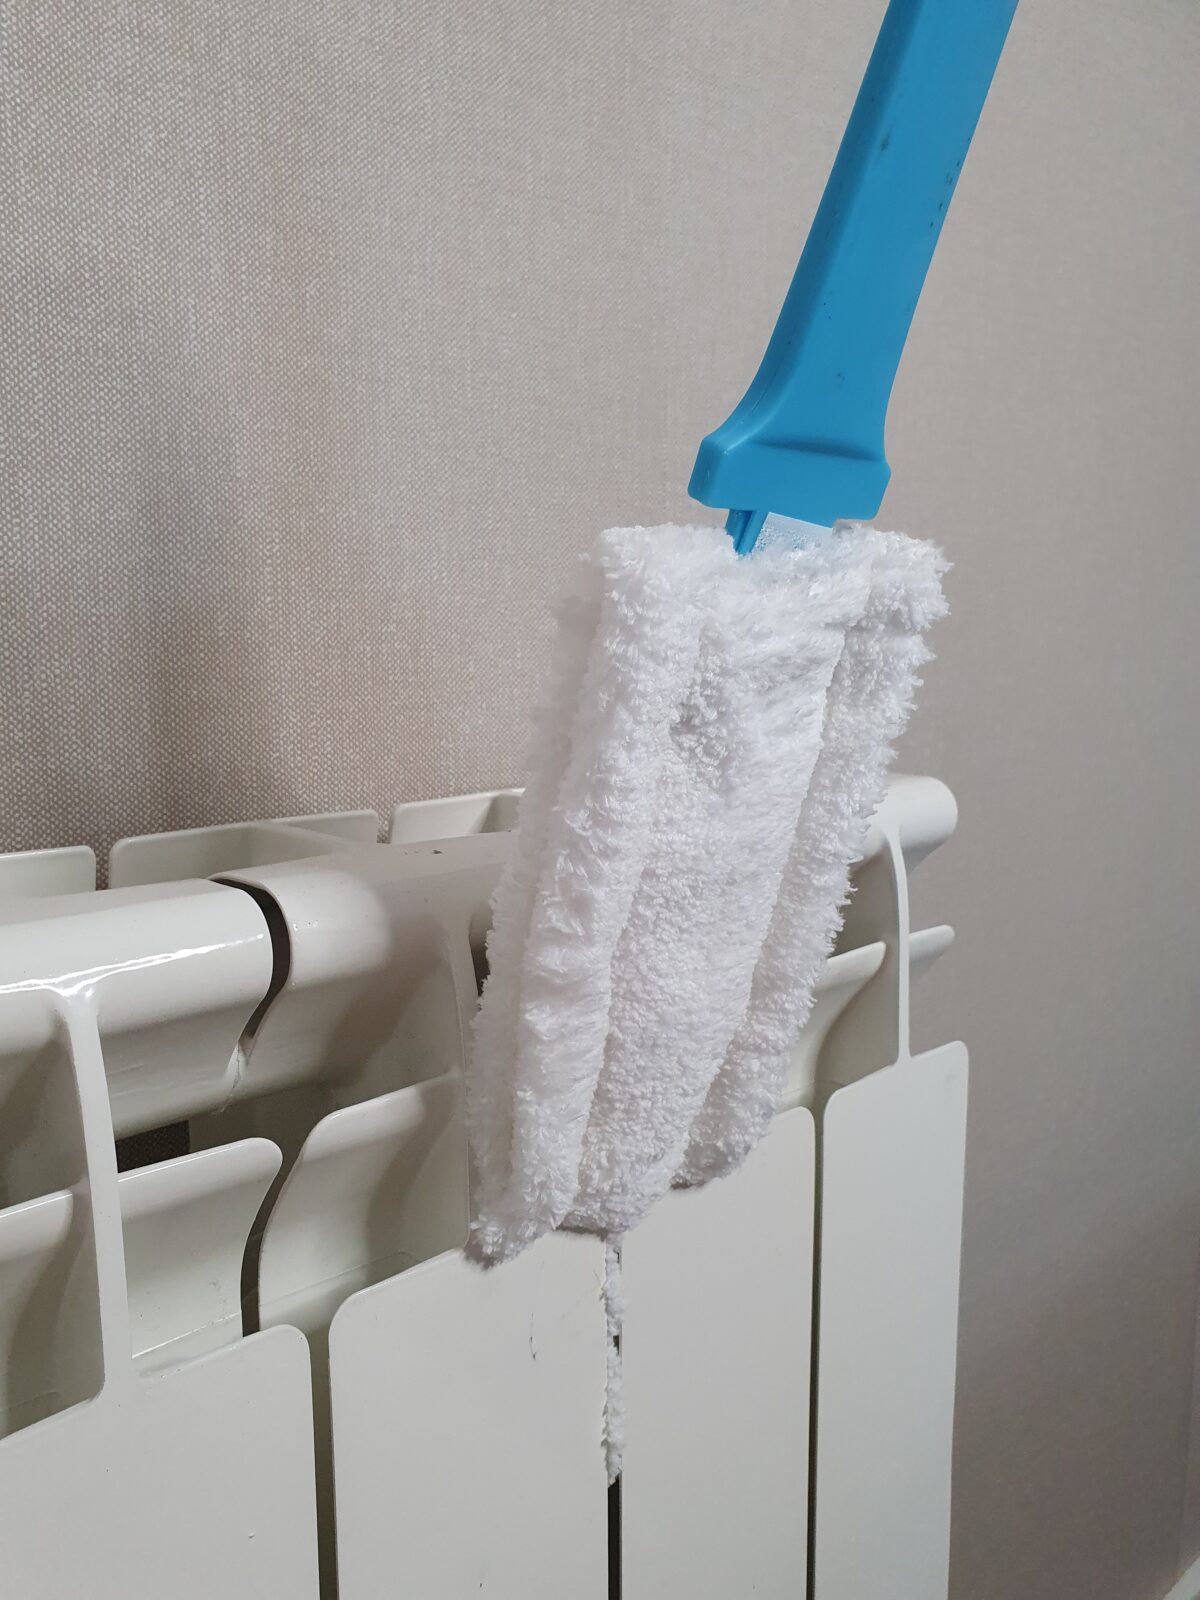 Cepillo limpia radiadores – Ordeno tu casa